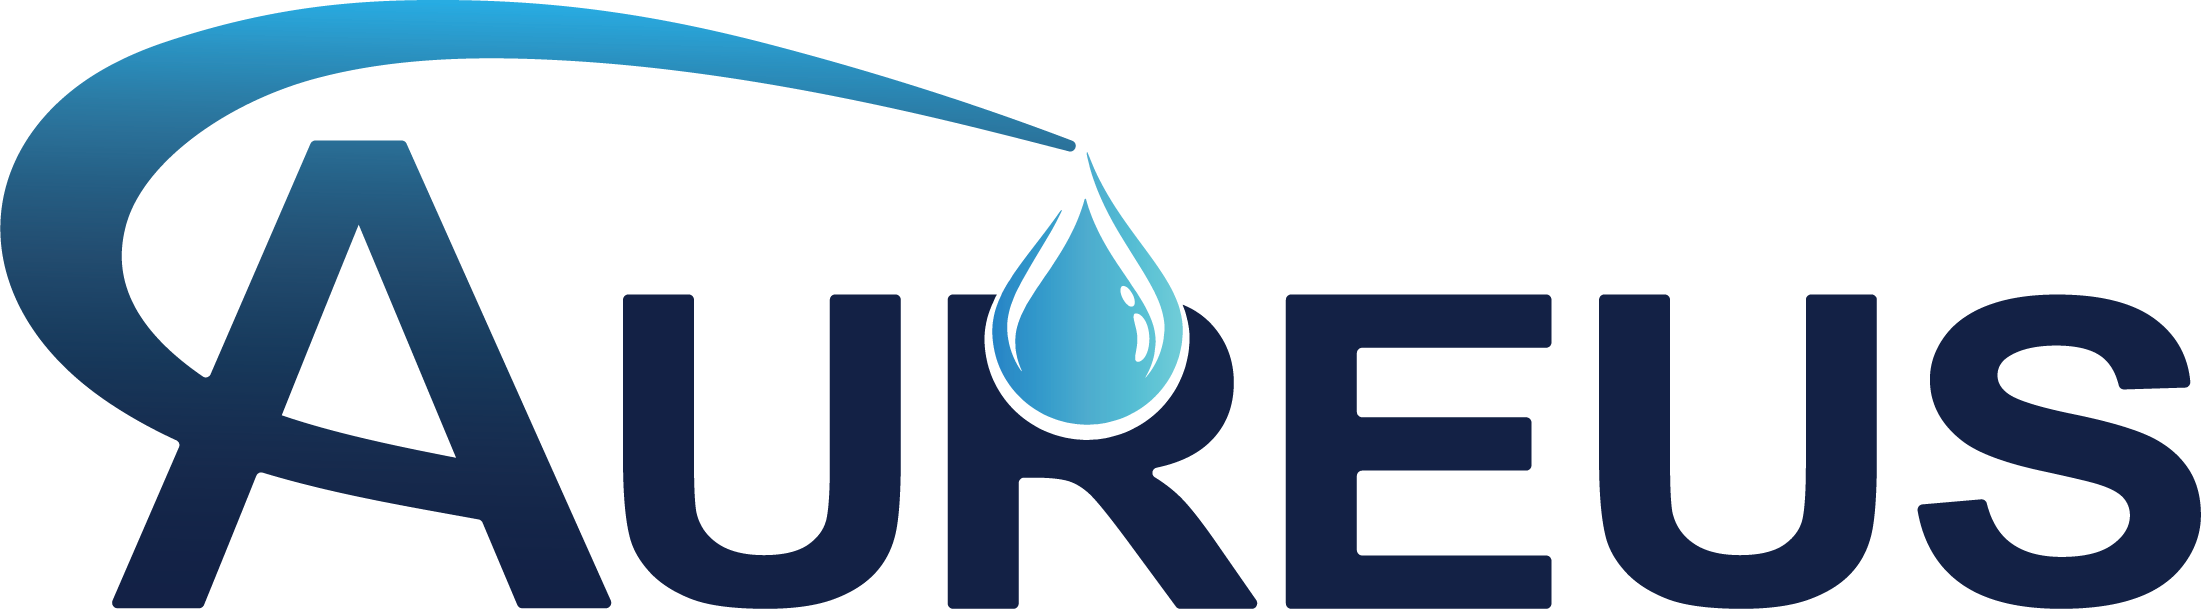 Aureus Energy Services logo